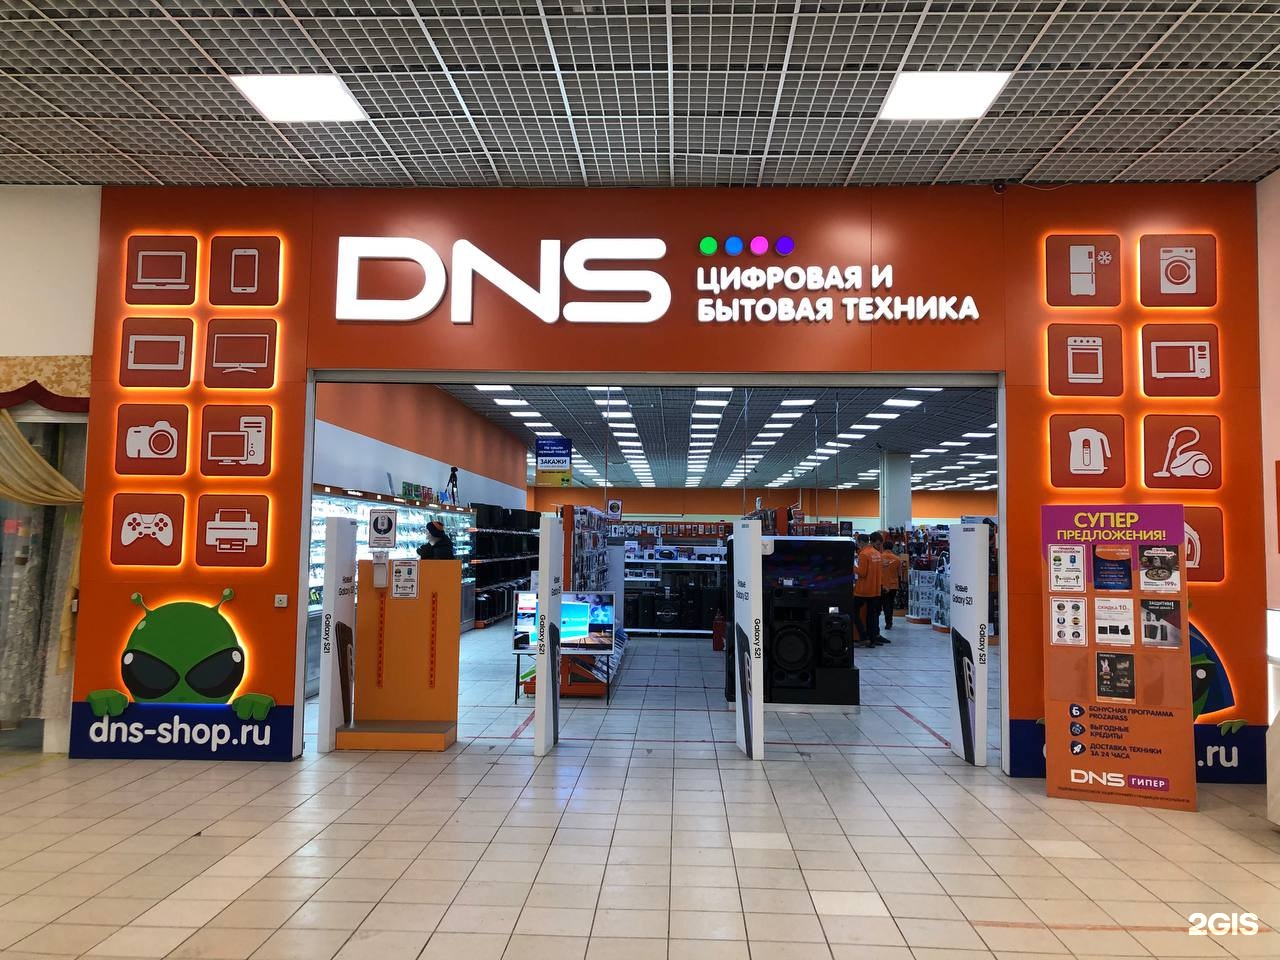 Днс уфа телефон. Сервисный центр ДНС Чита Анохина 91. DNS Уфа. Компьютерный центр "DNS". ДНС компьютер центр.